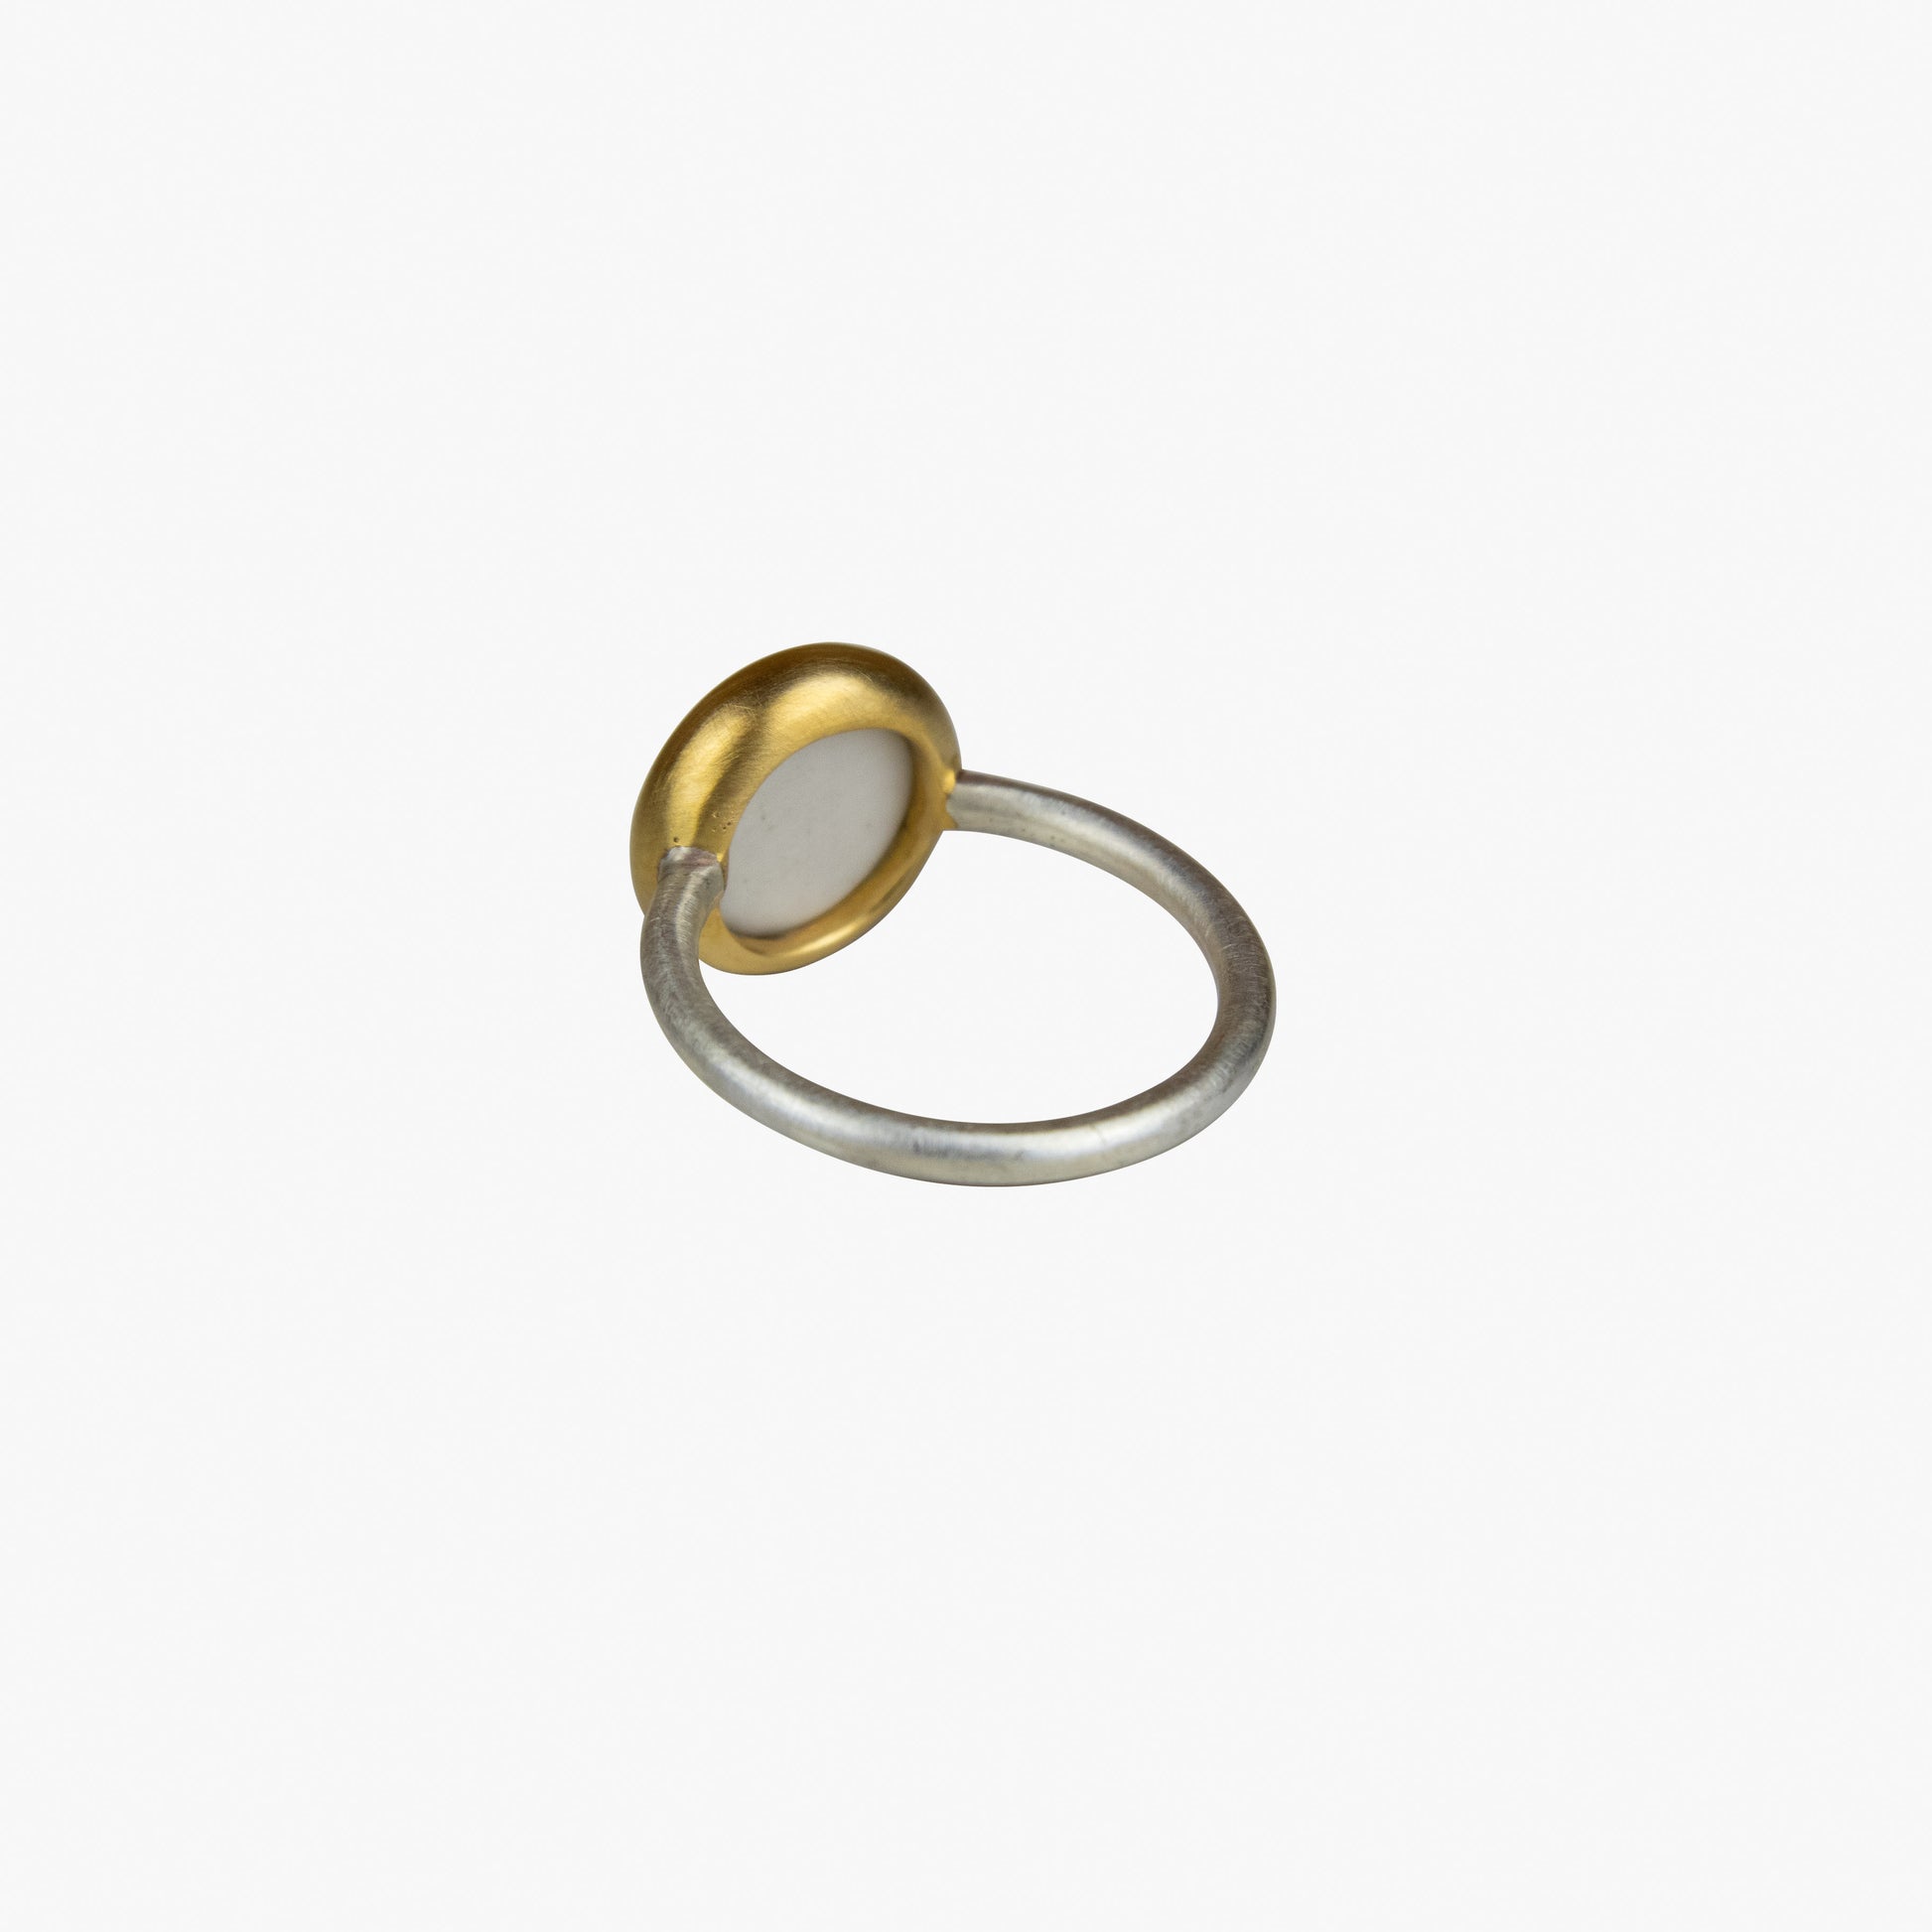 Der Ring OHM besteht aus Sterlingsilber, einer galvanischen Vergoldung sowie Porzellan